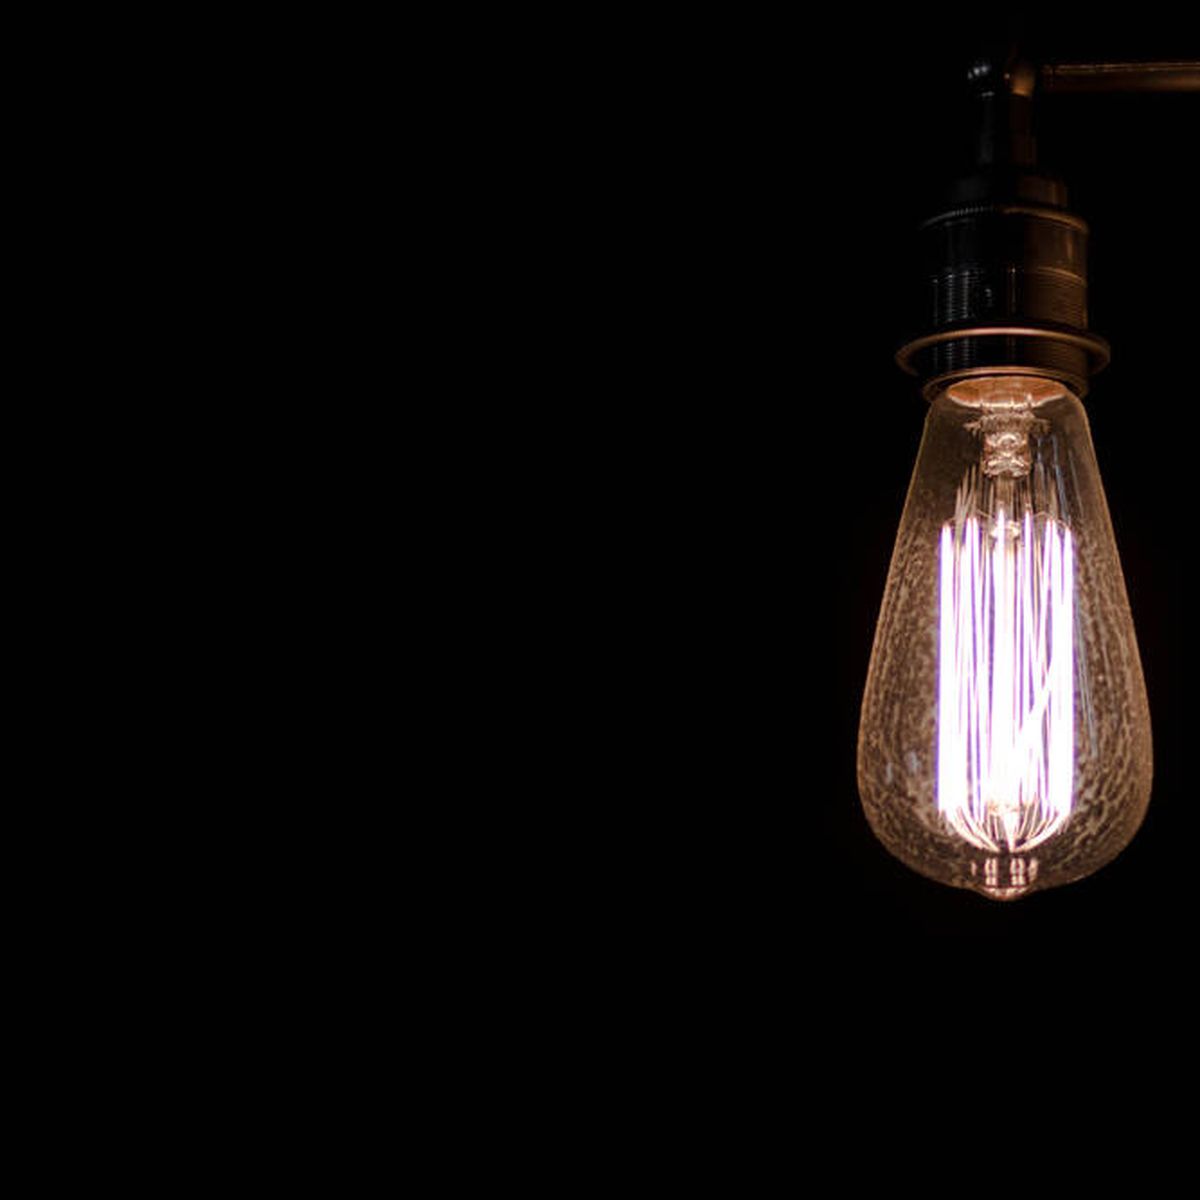 Transitorio Kakadu aliviar Las mejores bombillas LED para iluminar tu hogar con más eficiencia